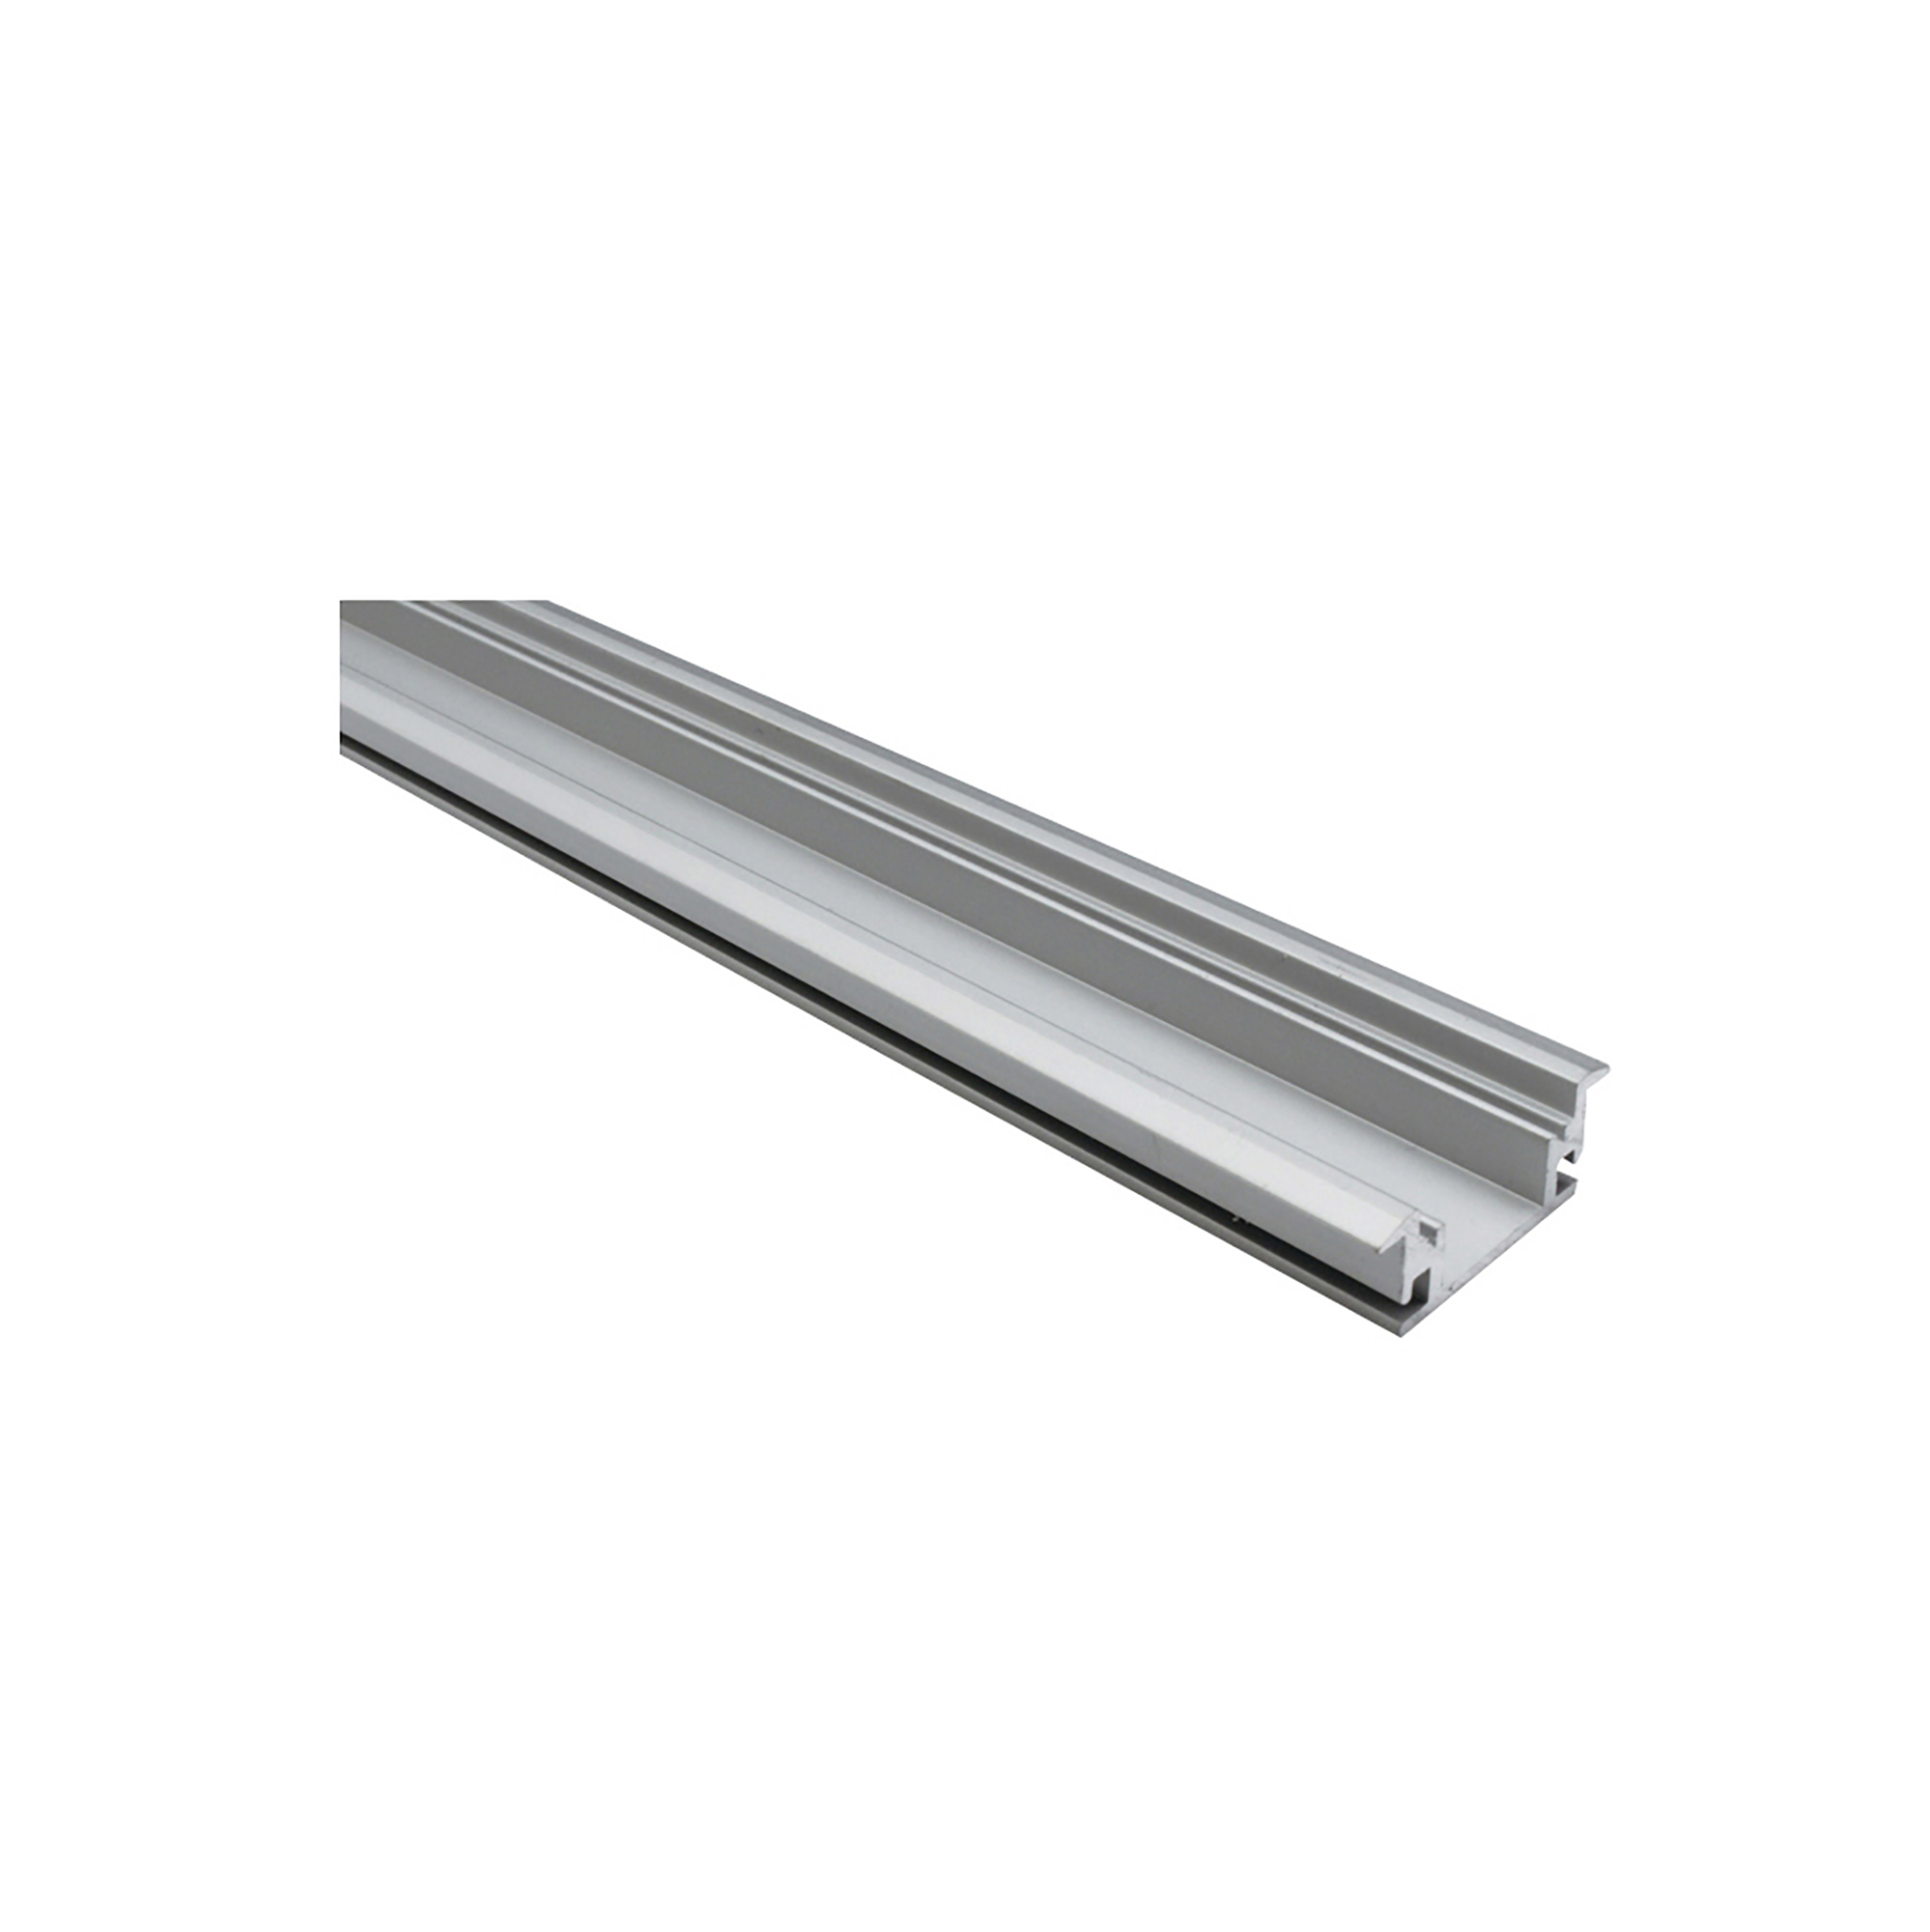 DA900030  2m Anodized Silver Aluminum Profile 27 x 11mm